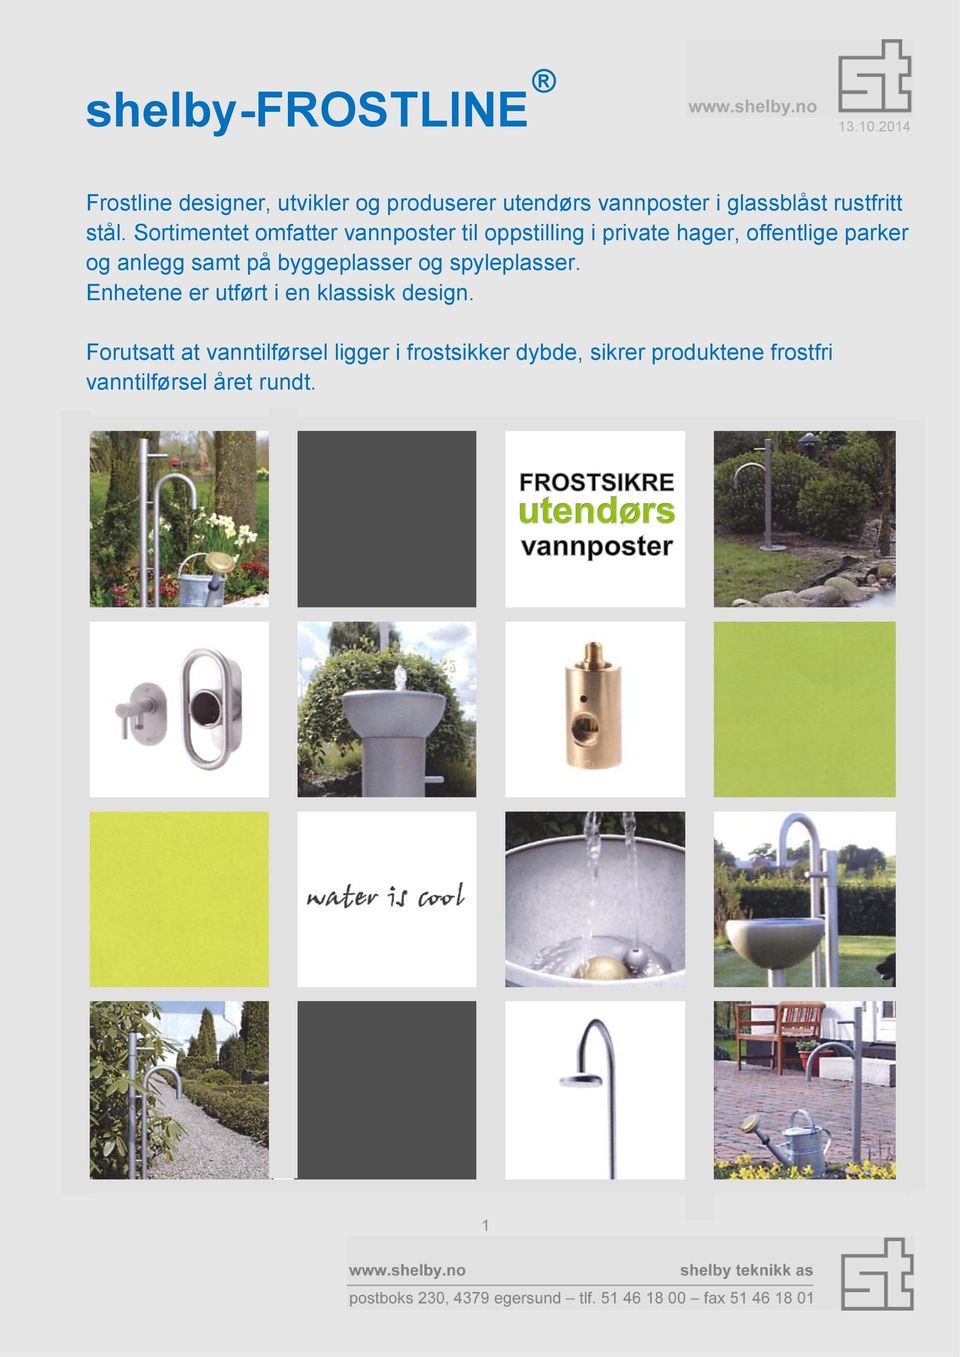 Sortimentet omfatter vannposter til oppstilling i private hager, offentlige parker og anlegg samt på